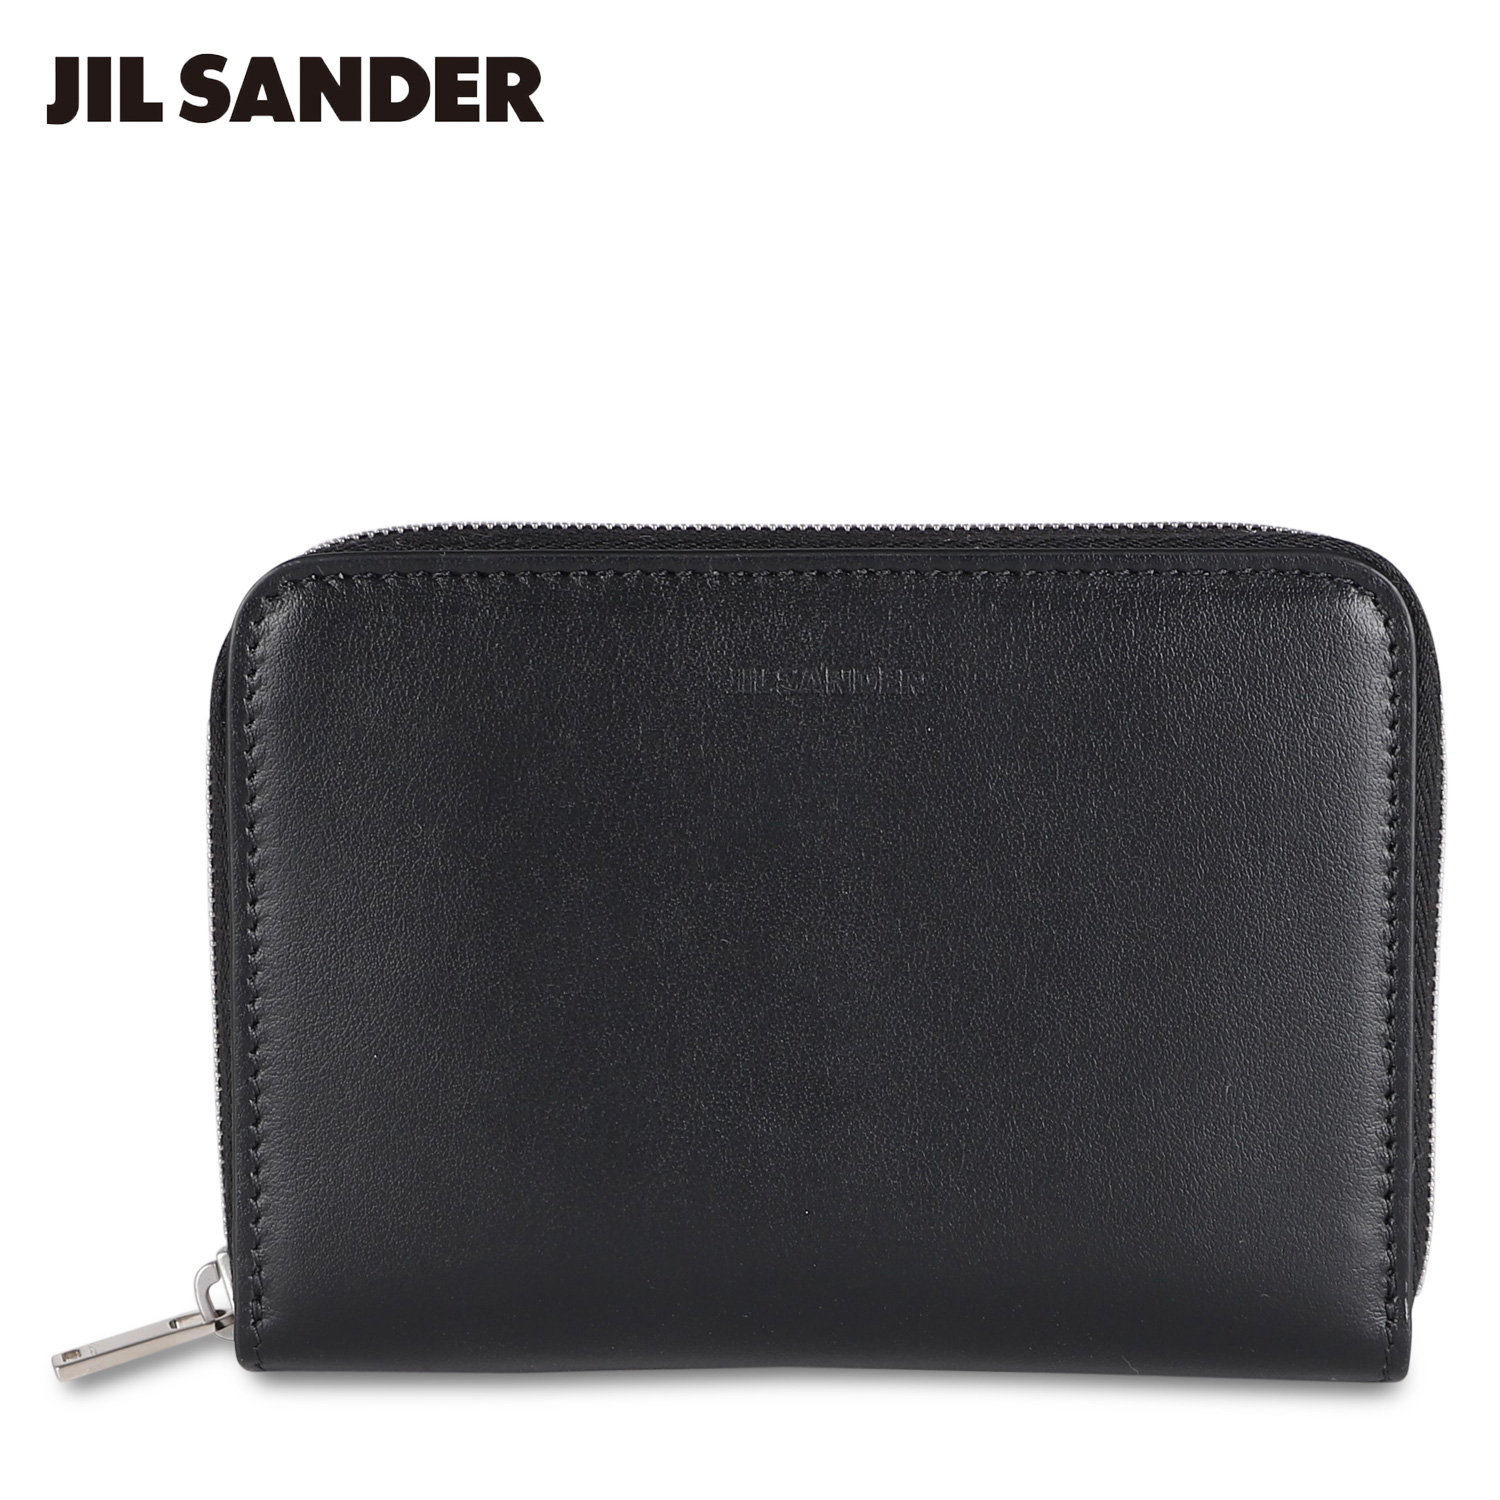 ジルサンダー JIL SANDER 財布 二つ折り財布 ポケット ジップ アラウンド ウォレット メンズ レディース 本革 ラウンドファスナー J25UI0003 P4966